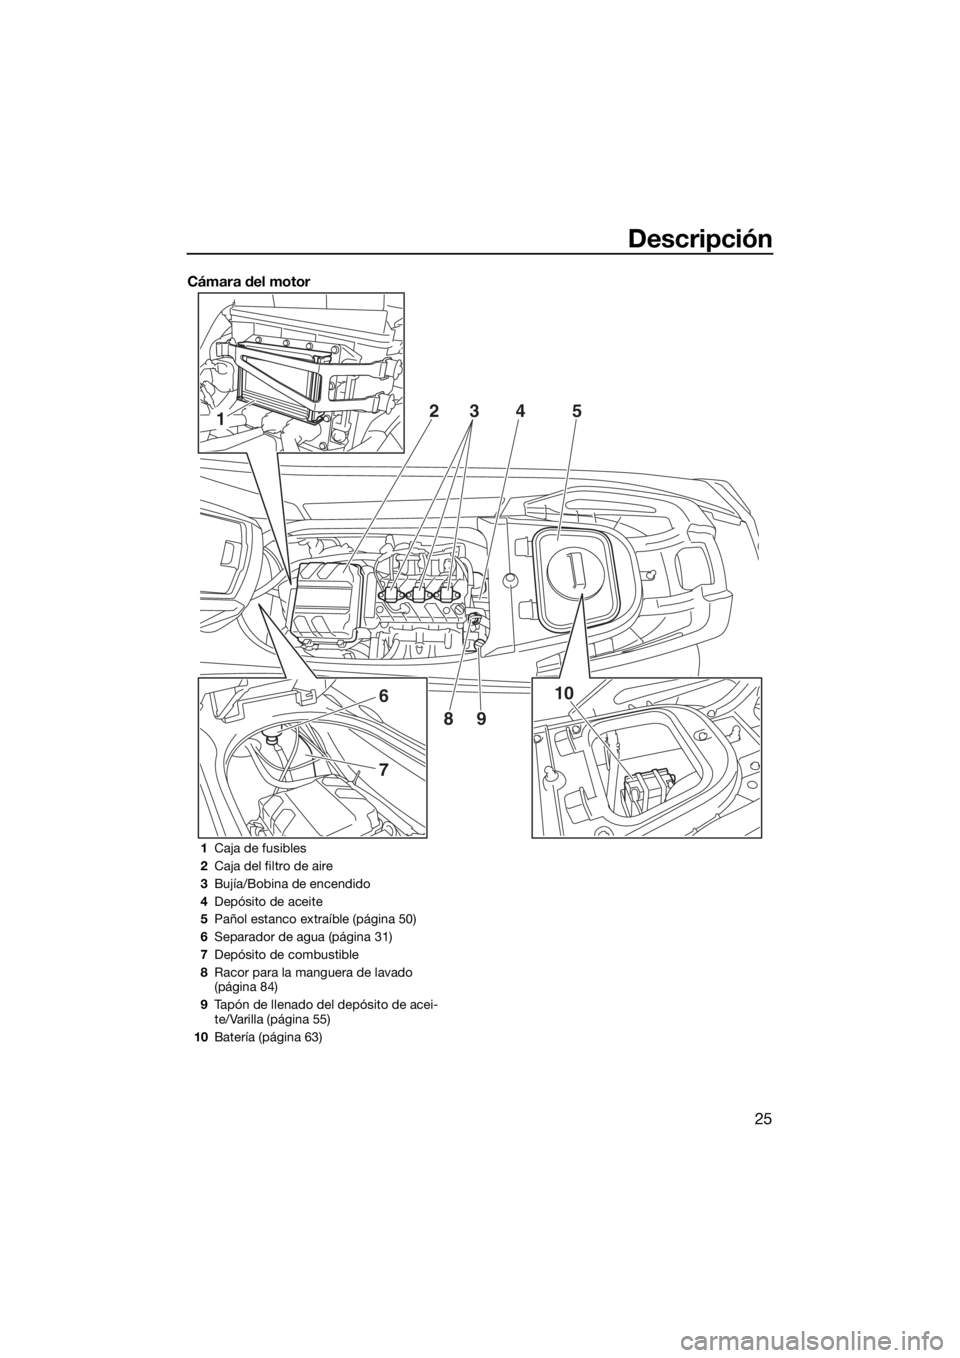 YAMAHA VX 2020  Manuale de Empleo (in Spanish) Descripción
25
Cámara del motor
1
6
7
10 2
345
89
1Caja de fusibles
2Caja del filtro de aire
3Bujía/Bobina de encendido
4Depósito de aceite
5Pañol estanco extraíble (página 50)
6Separador de ag